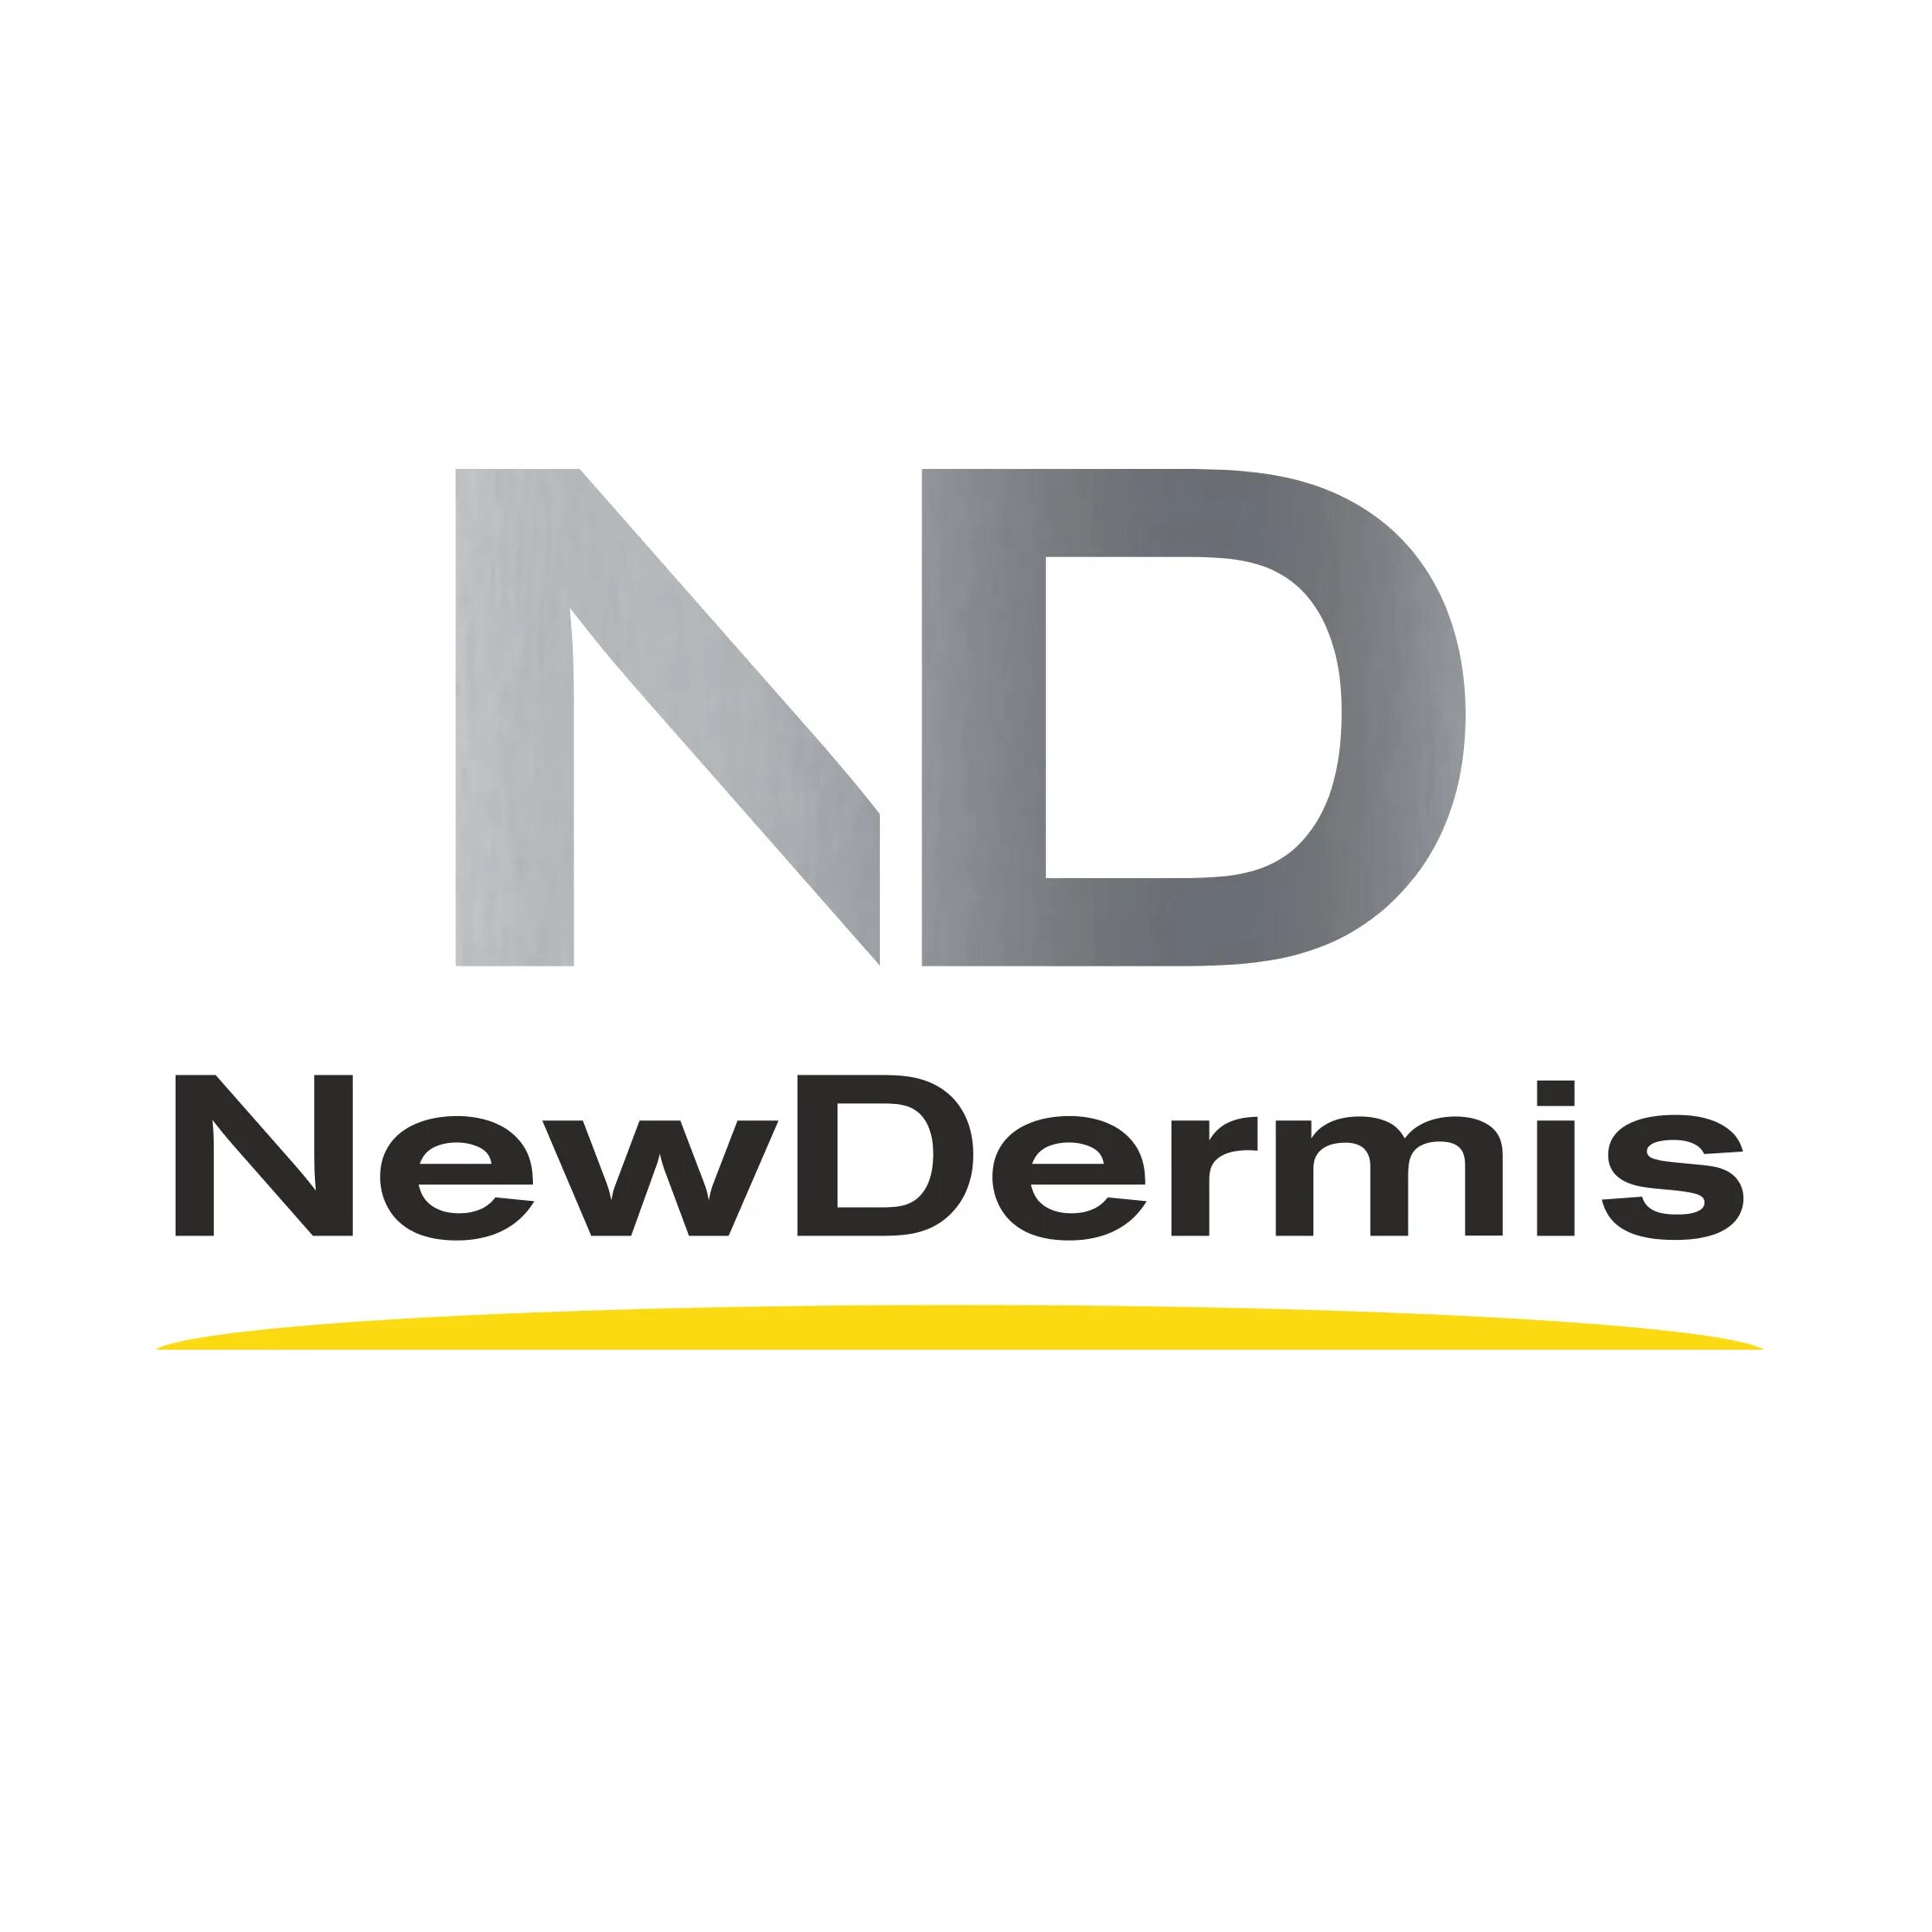 Нью дермис солнцезащитный крем. Крем New dermis защита 50. Омолаживающий солнцезащитный крем SPF 50+ ppd24 newdermis. Newdermis крем производитель.